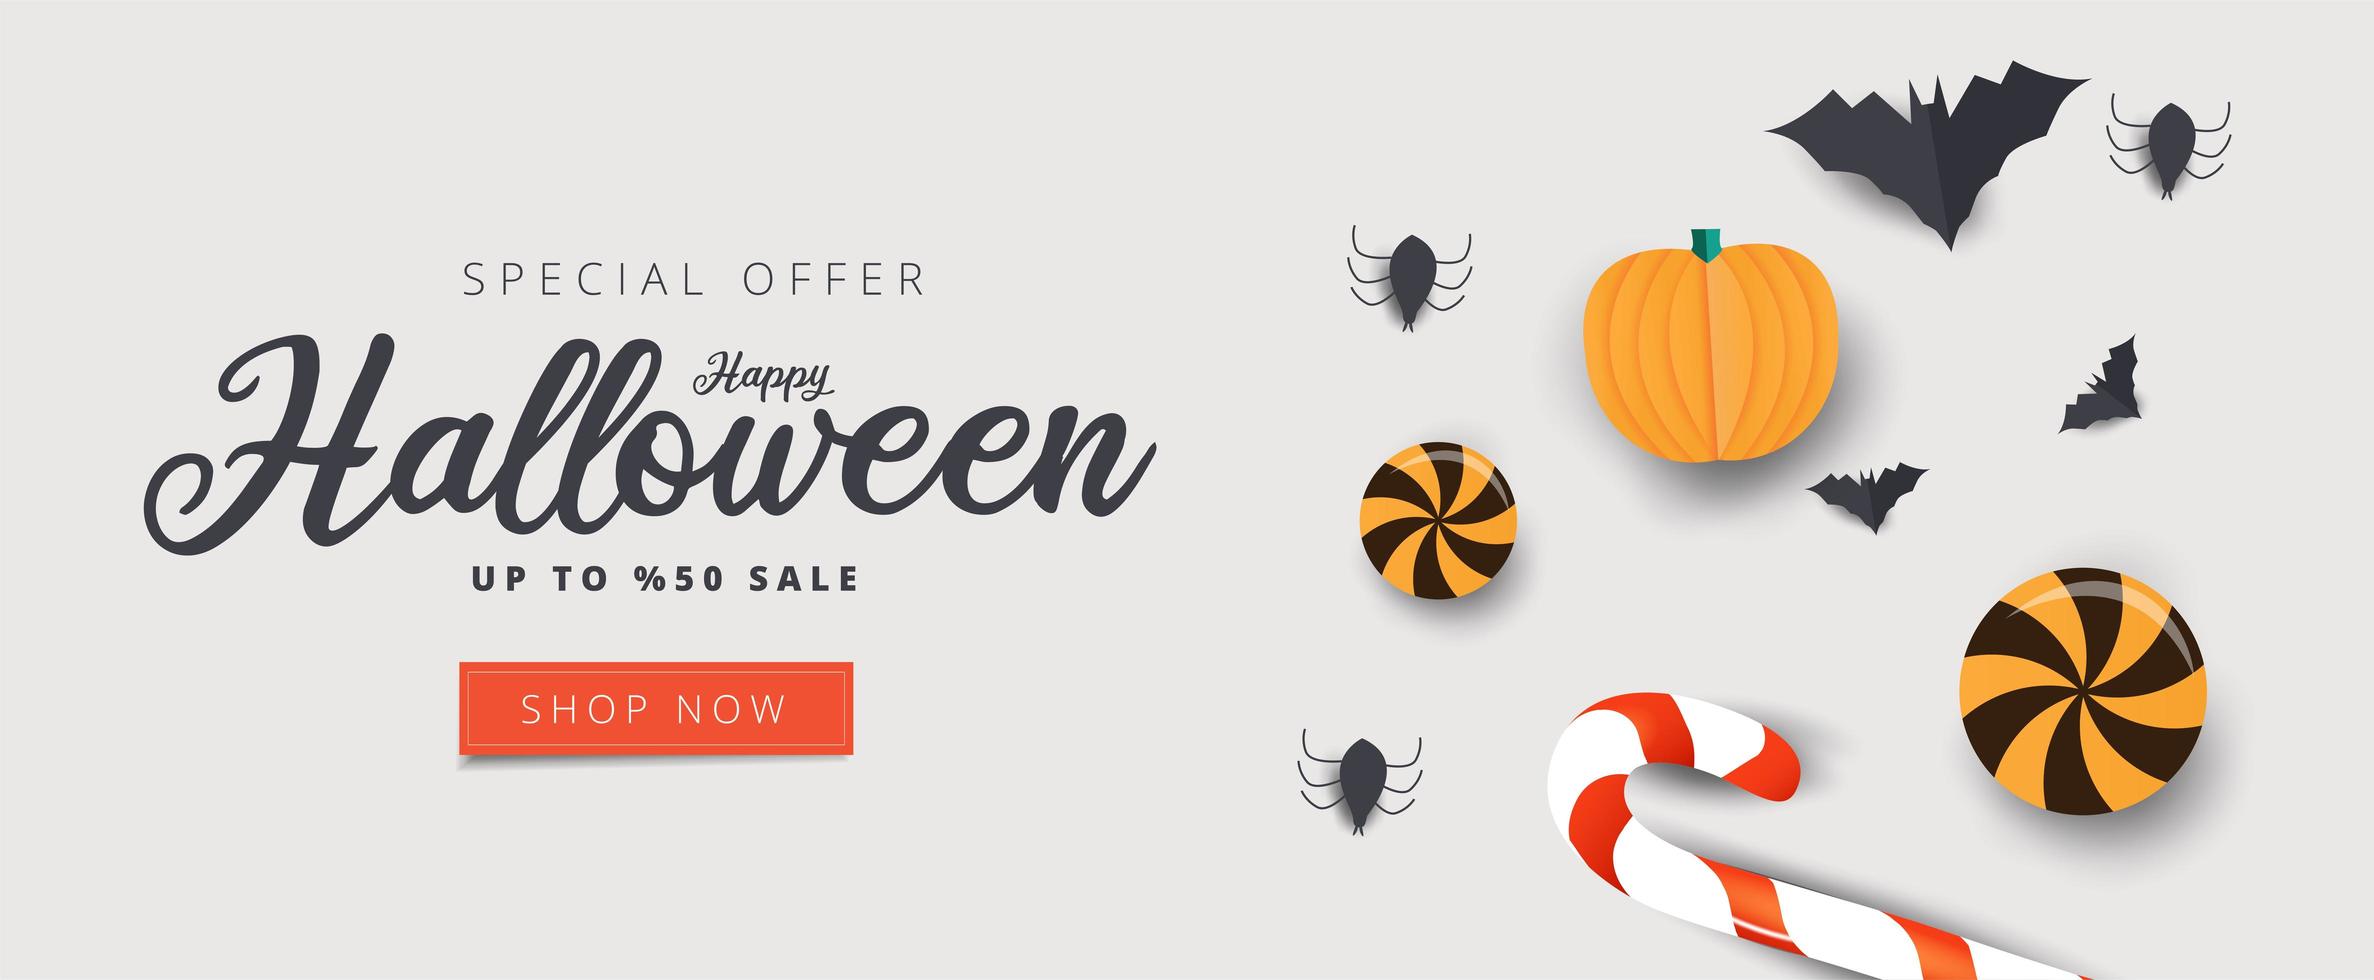 happy halloween-verkoopbanner met snoep, vleermuizen en spinnen vector